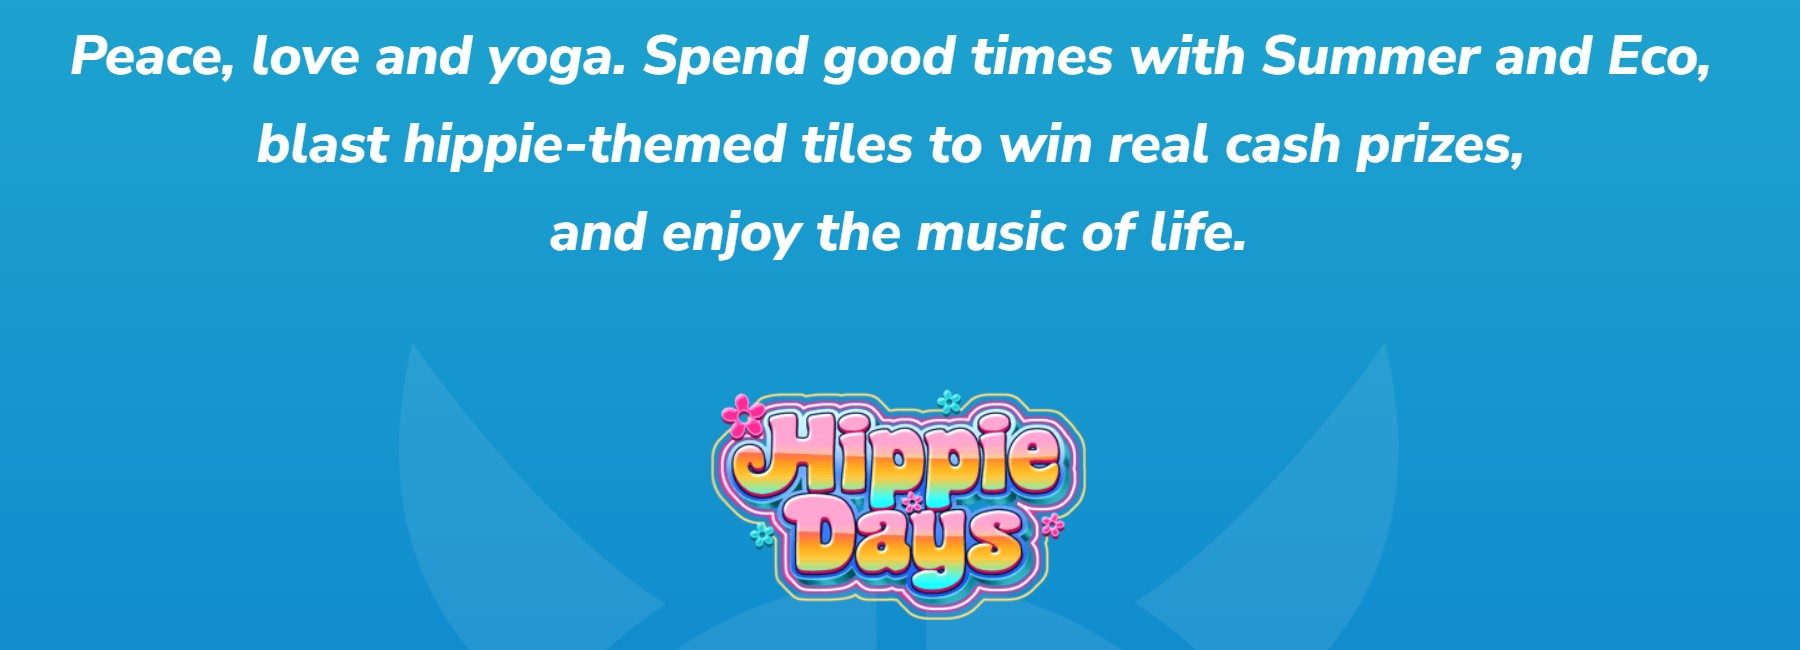 Hippie Days Overview